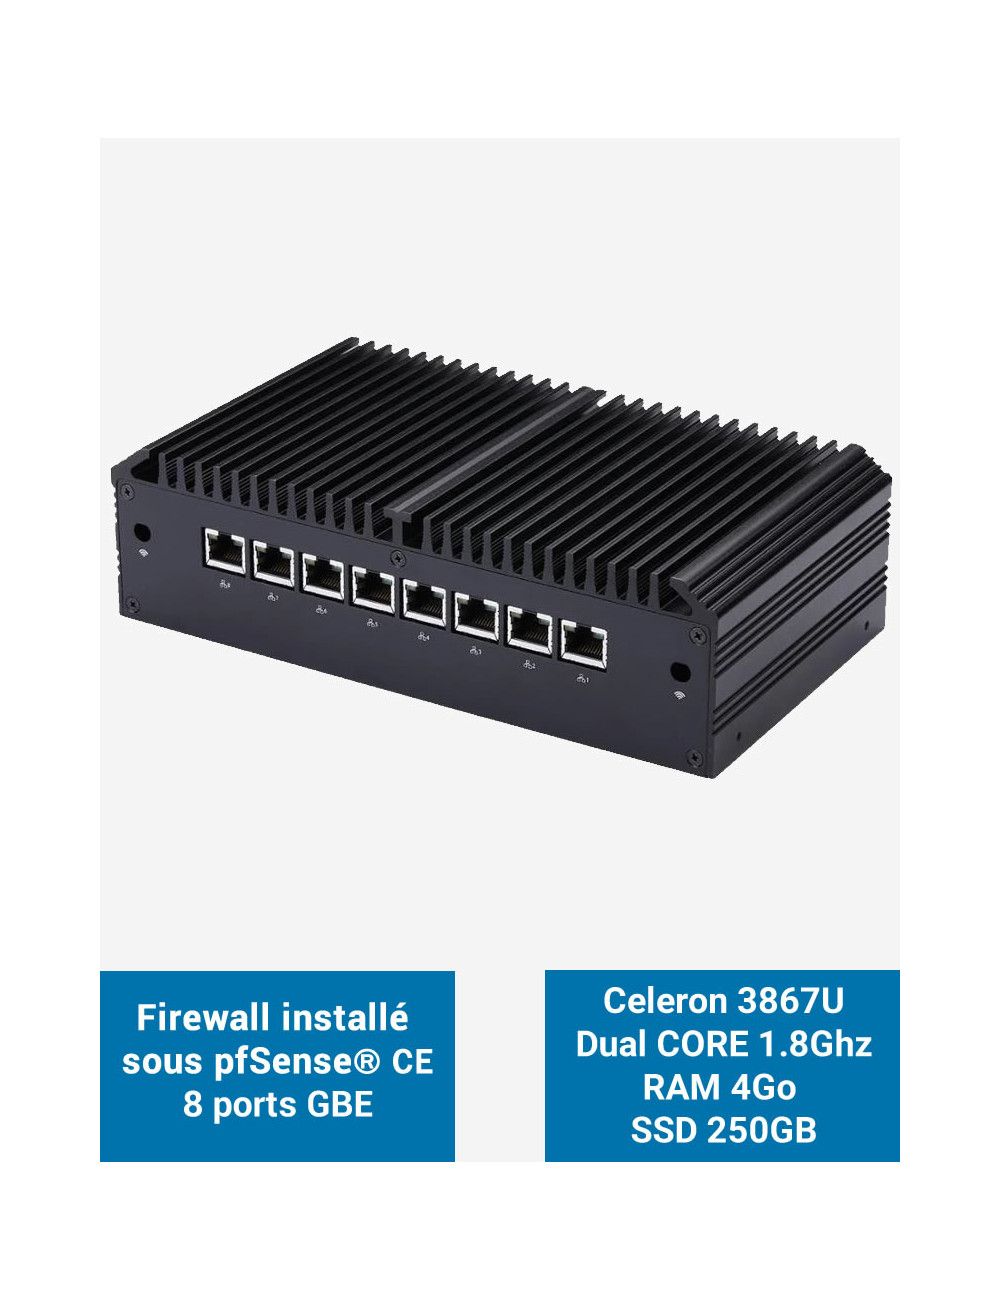 Firewall Q8x Celeron 3867U 8 ports GbE 4GB 250GB